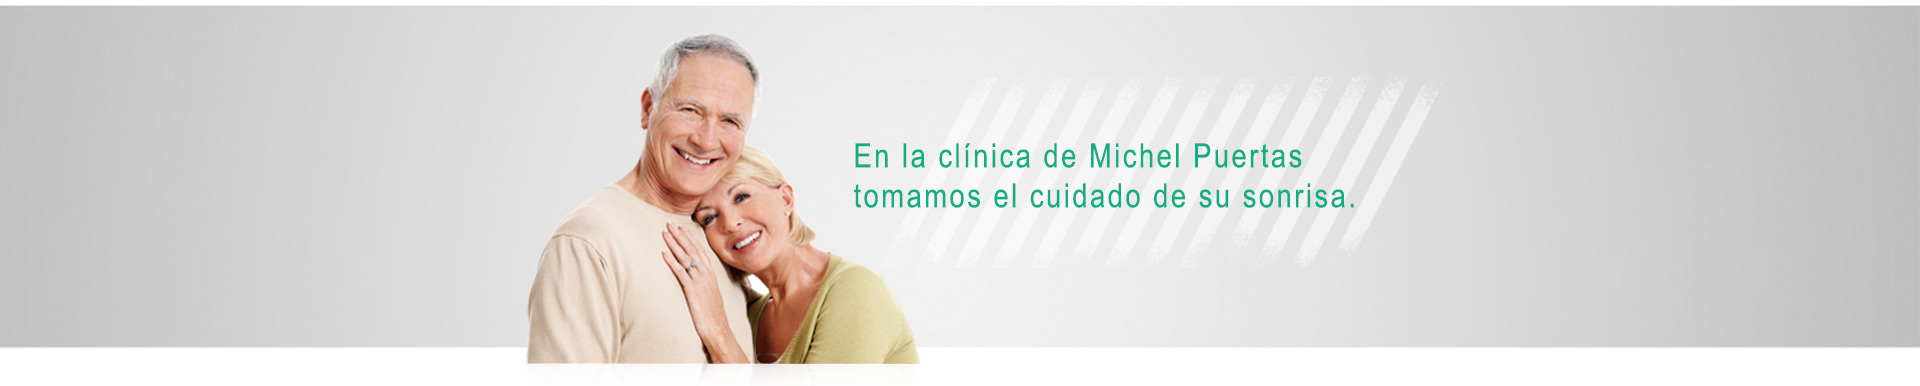 En la clínica de Michel Puertas tomamos el cuidado de su sonrisa.